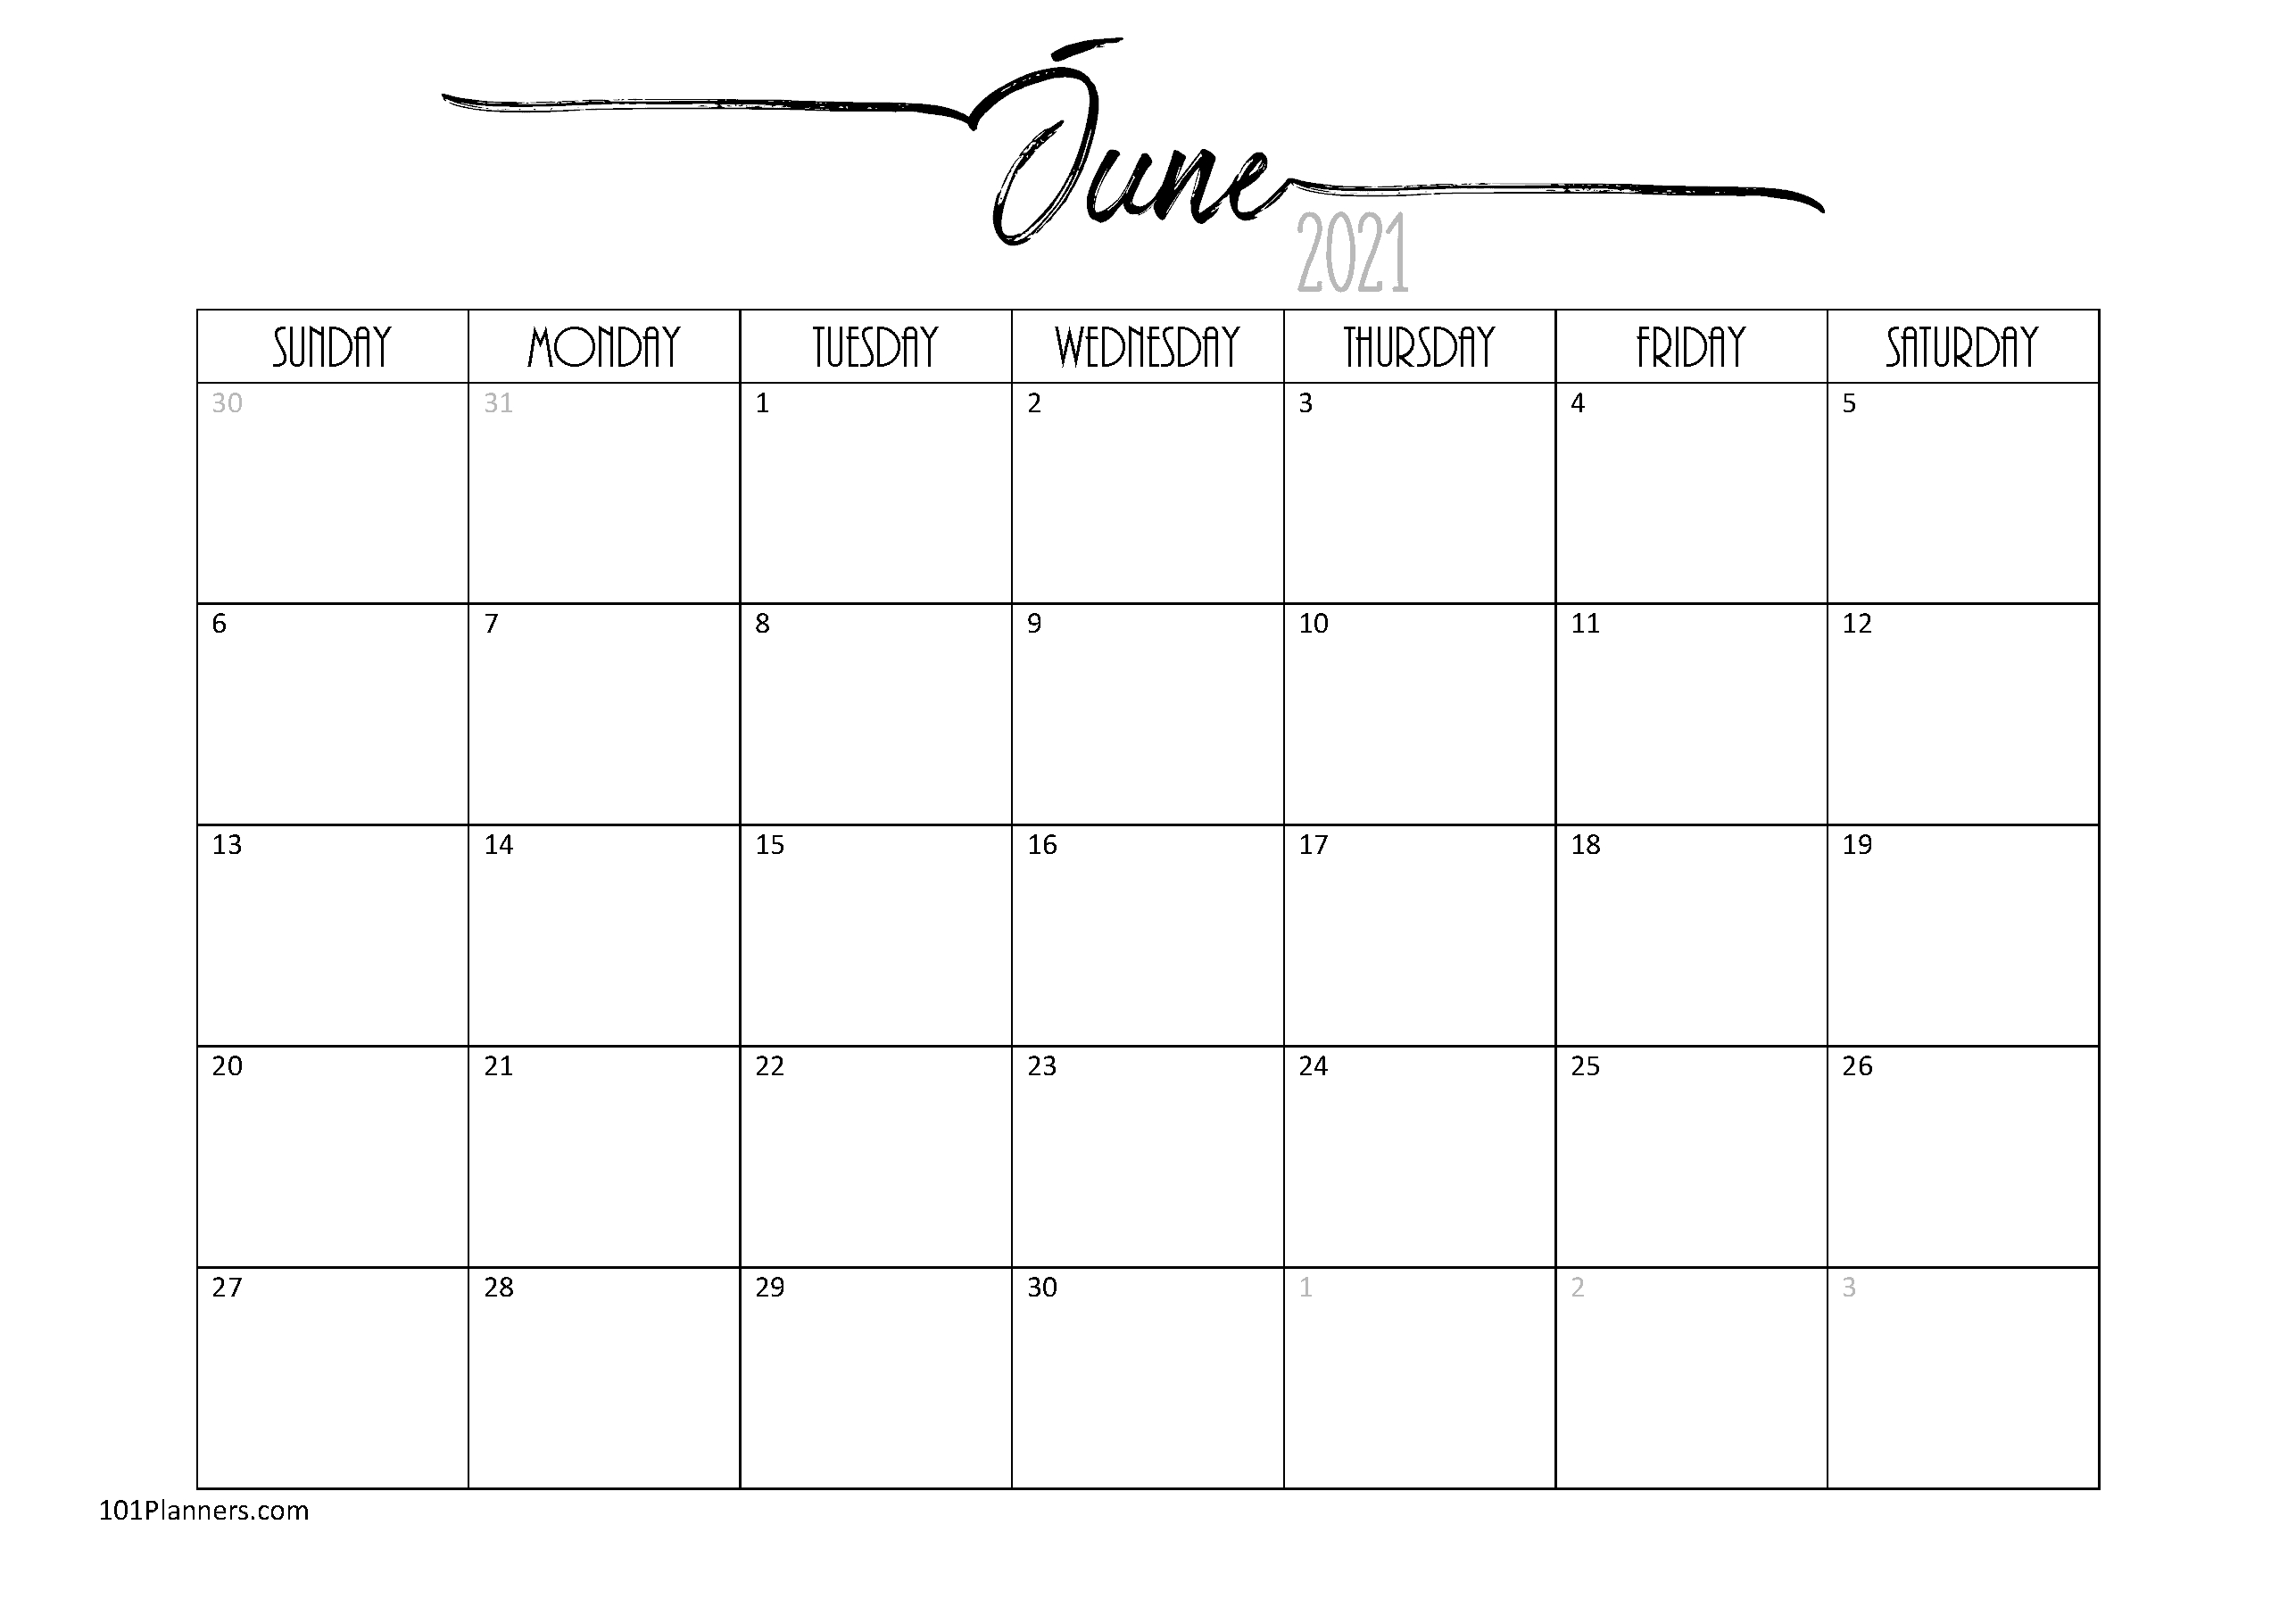 Free Printable June 2021 Calendar | Customize Online June 2021 Calendar Pdf Download